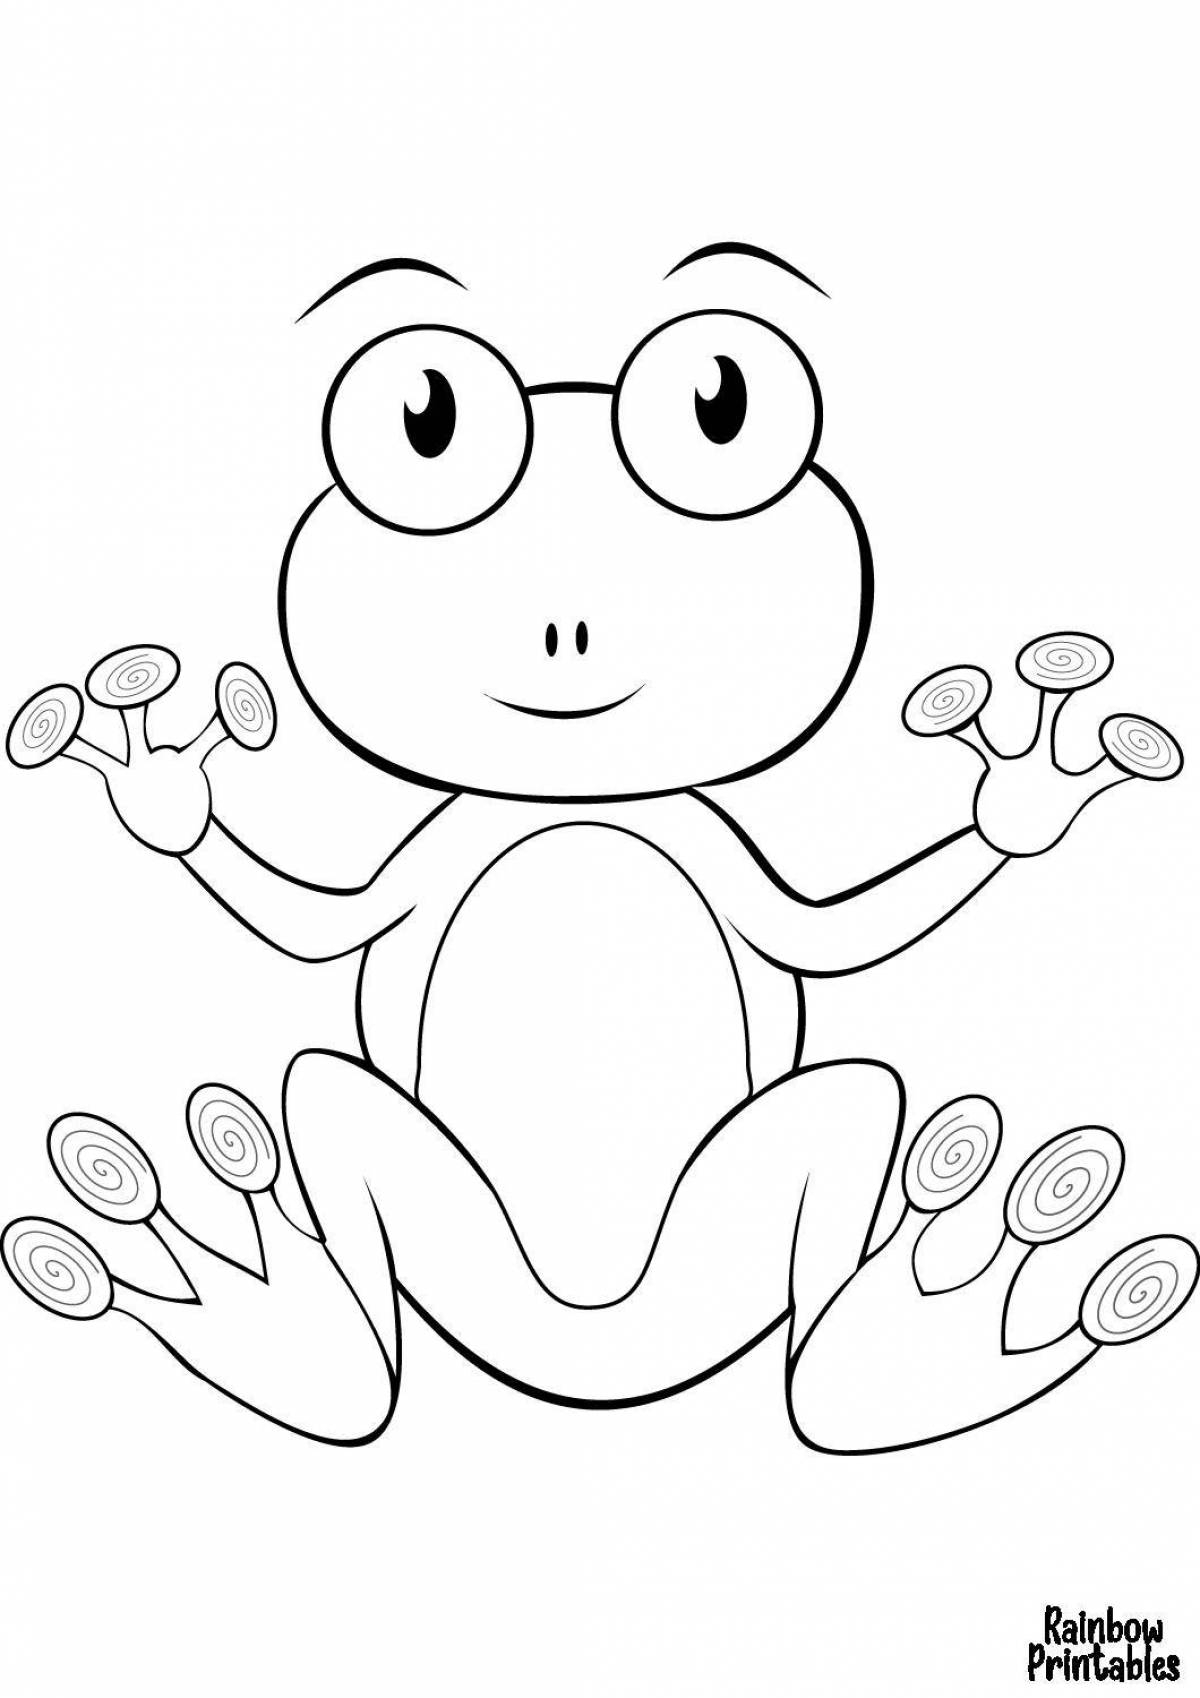 Веселая лягушка-раскраска для дошкольников